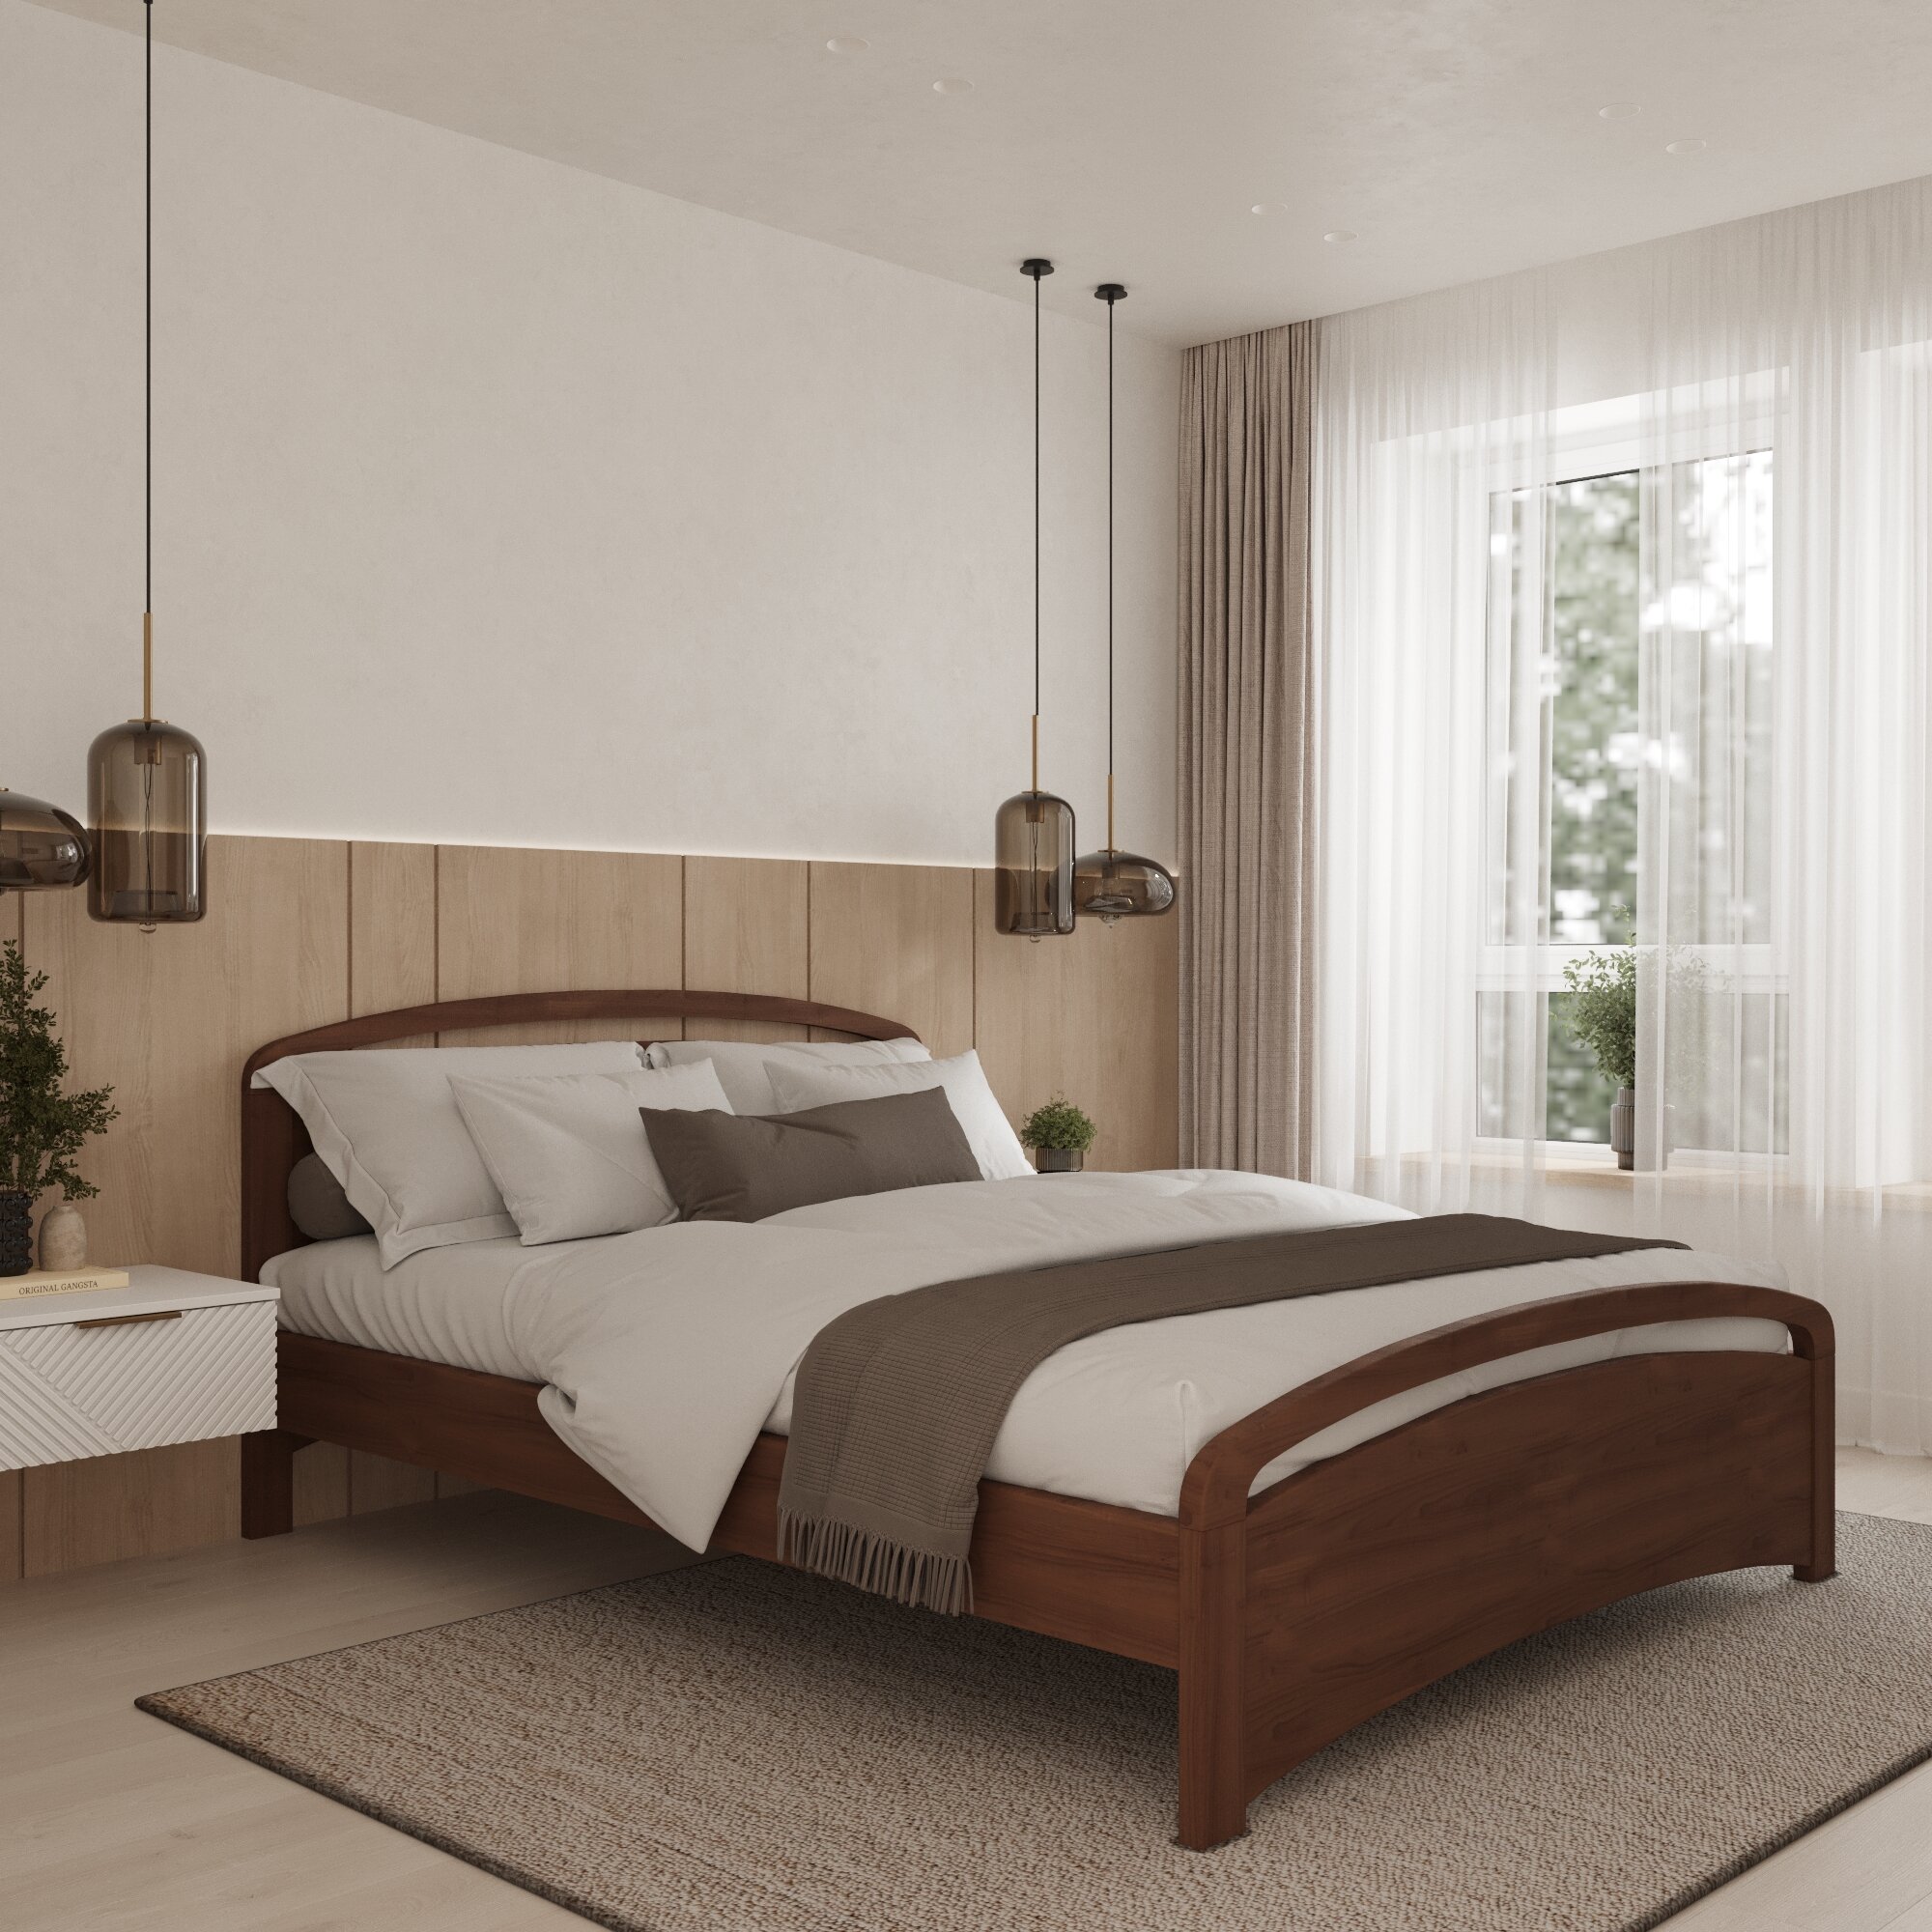 Двуспальная кровать Кровать деревянная Бали Люкс 200*200, 200х200 см, ММК-Древ